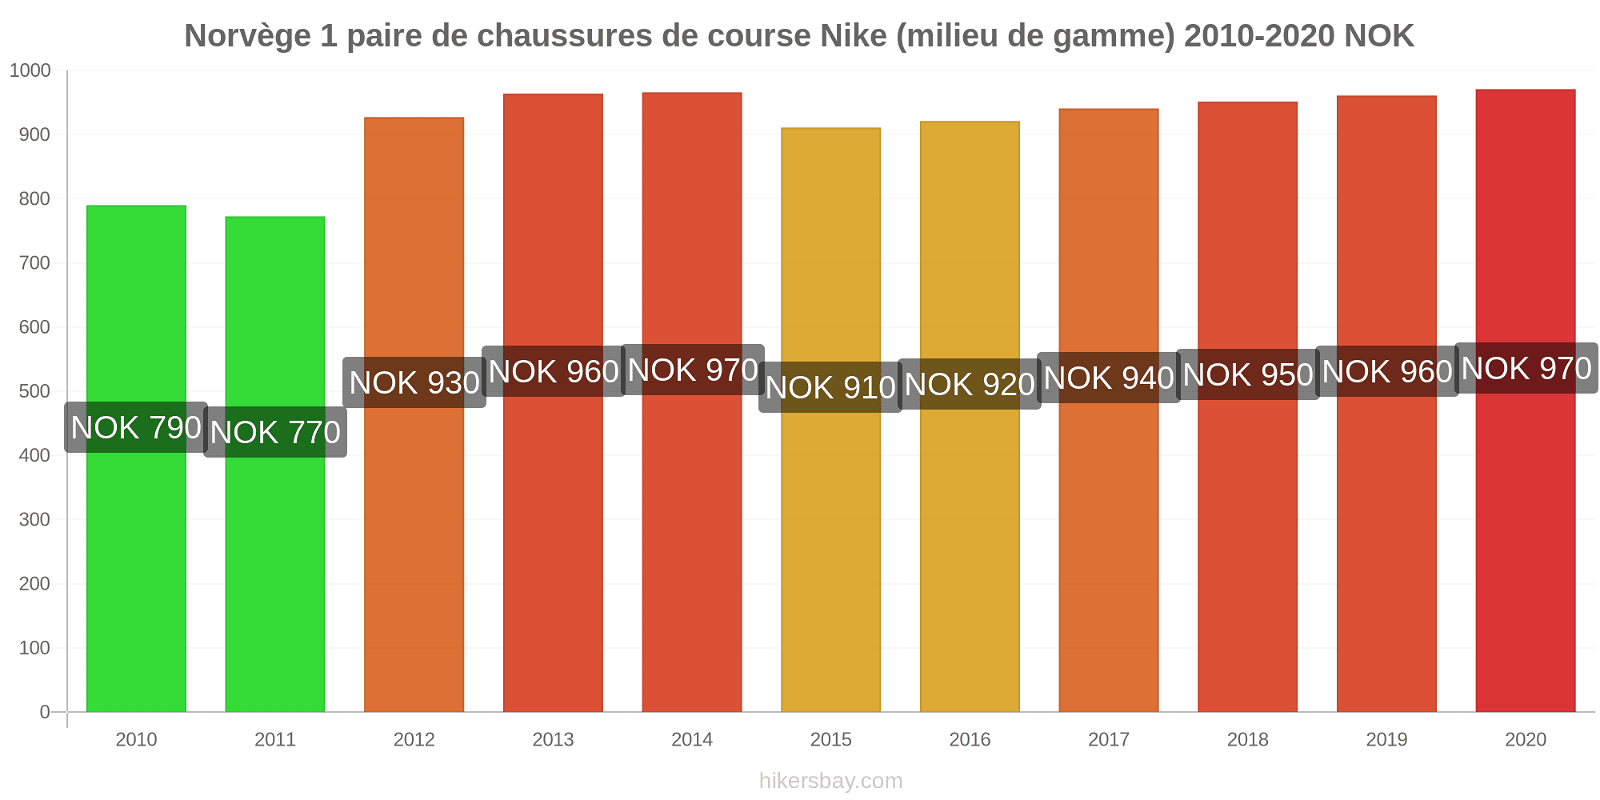 Norvège changements de prix 1 paire de chaussures de course Nike (milieu de gamme) hikersbay.com